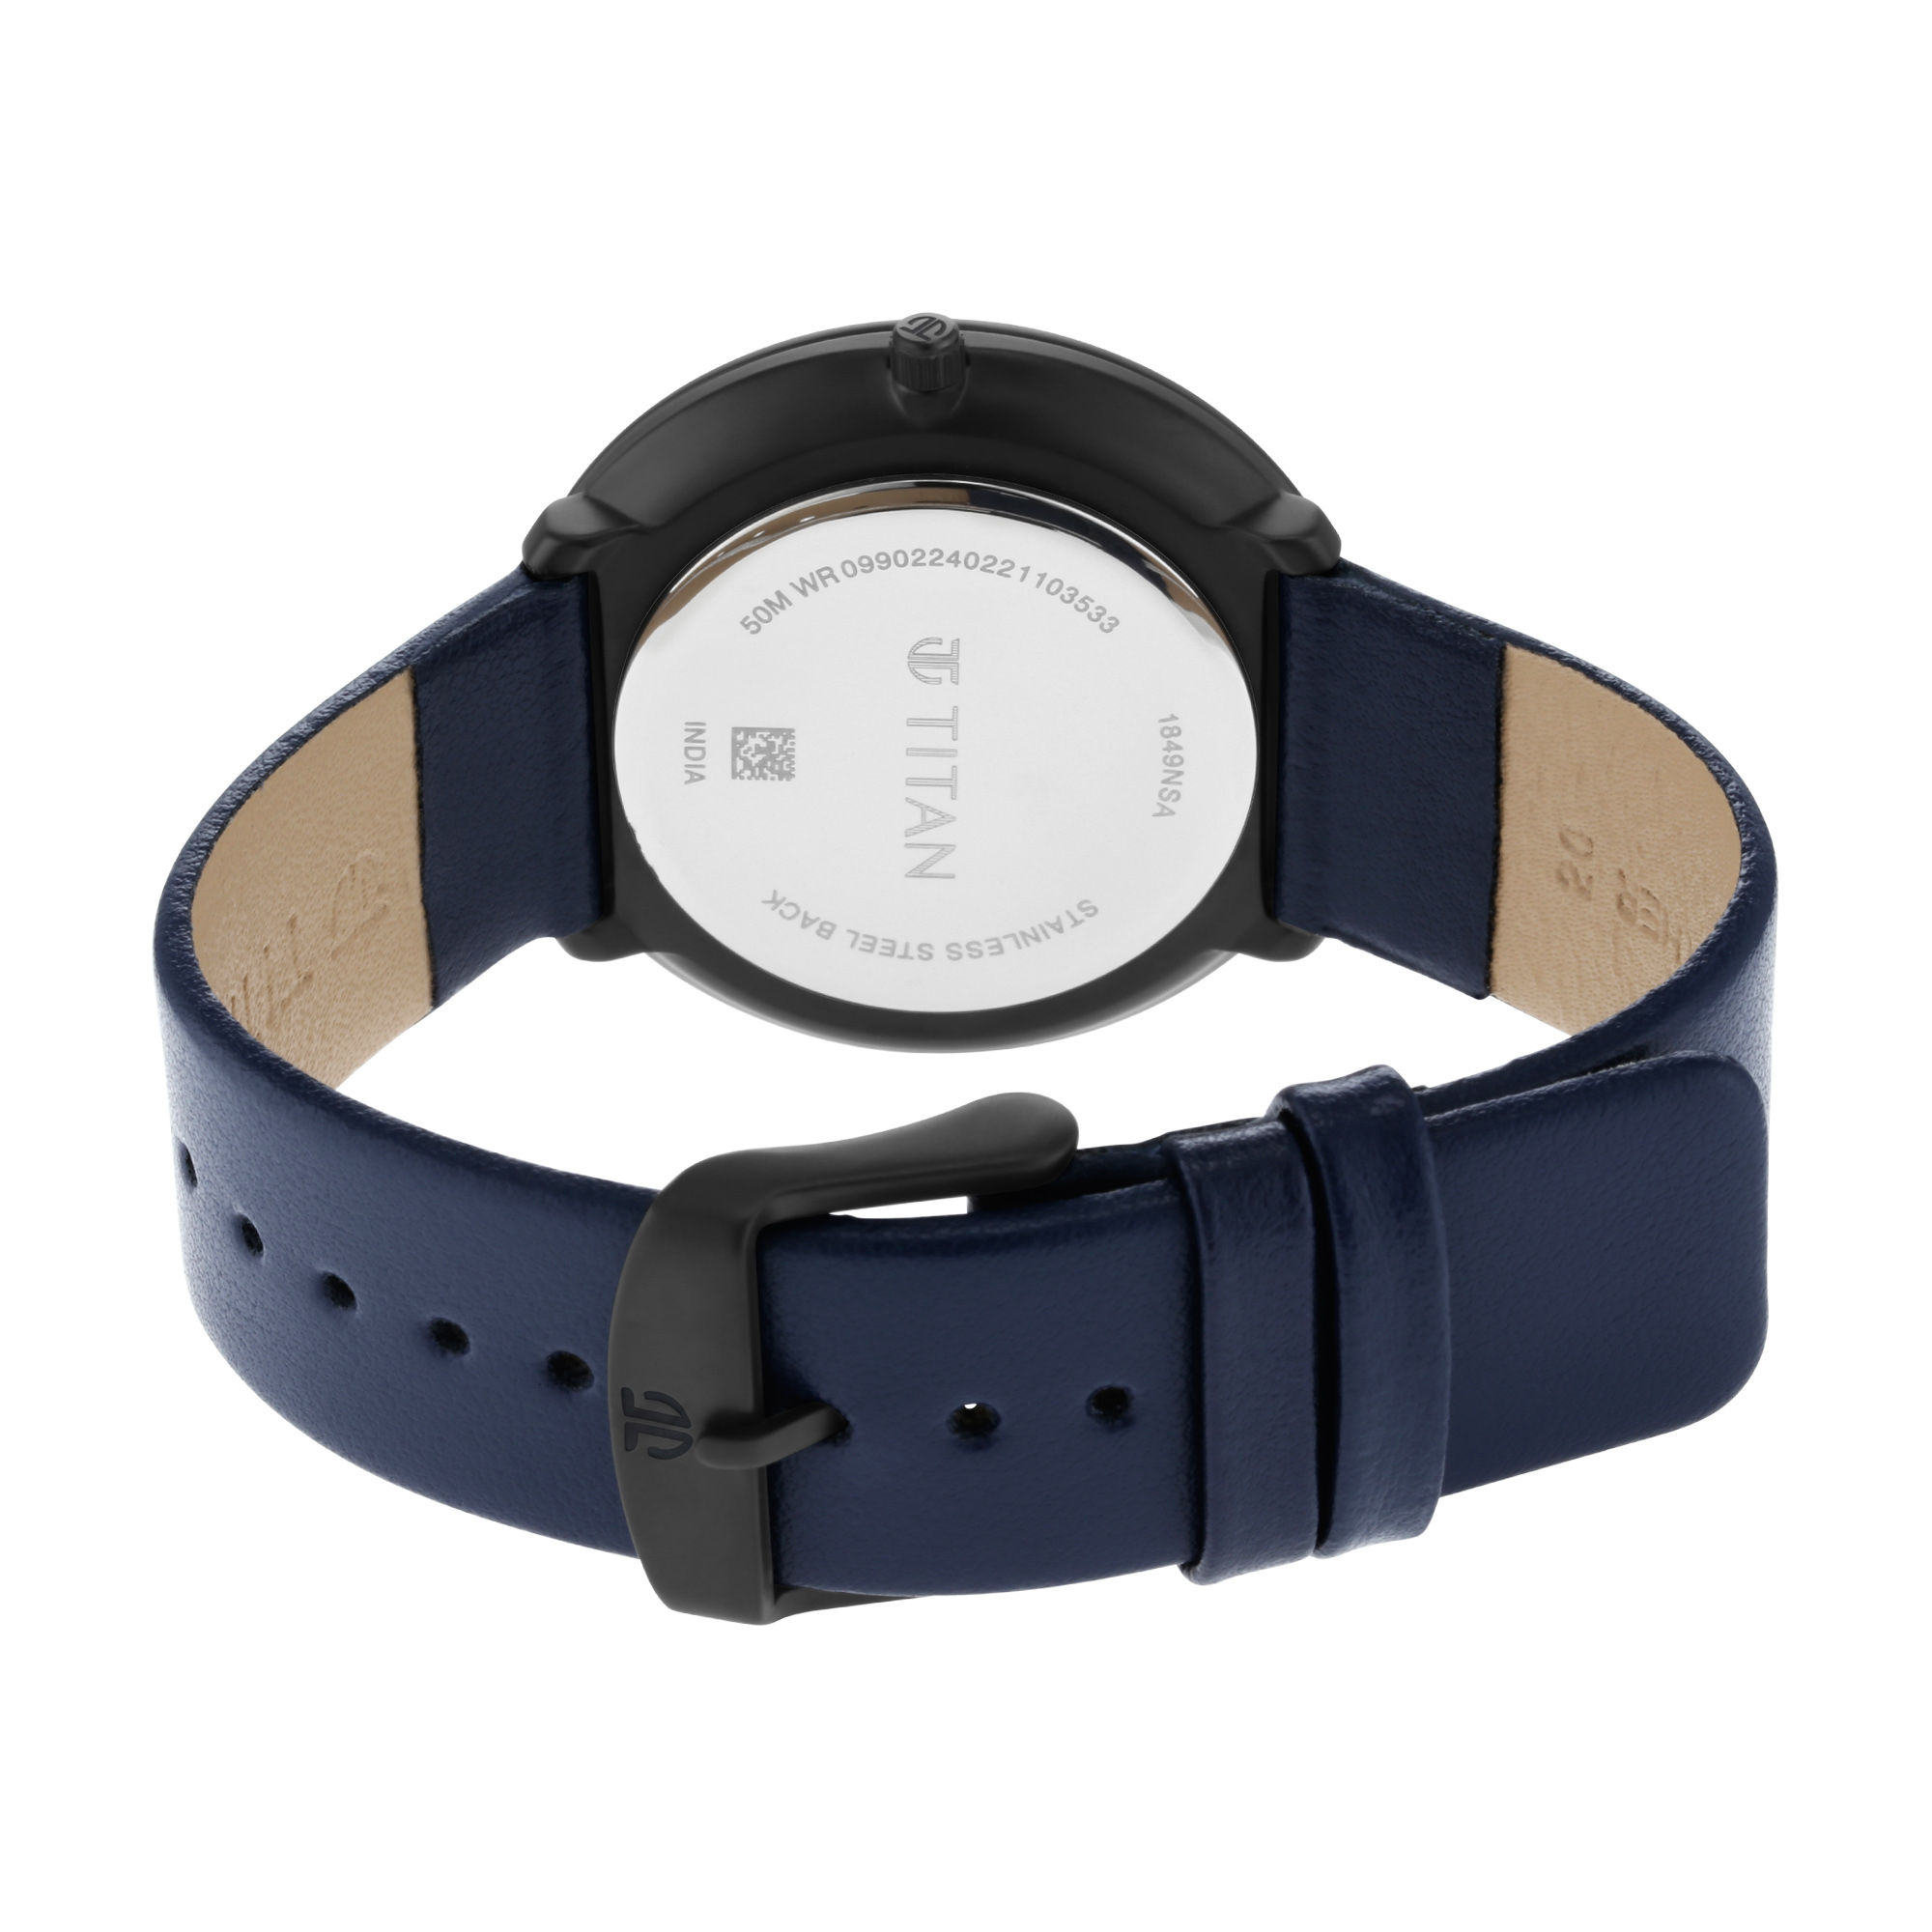 Titan Minimals 1849Nl01 White Dial Analog Watch For Men: Buy Titan ...